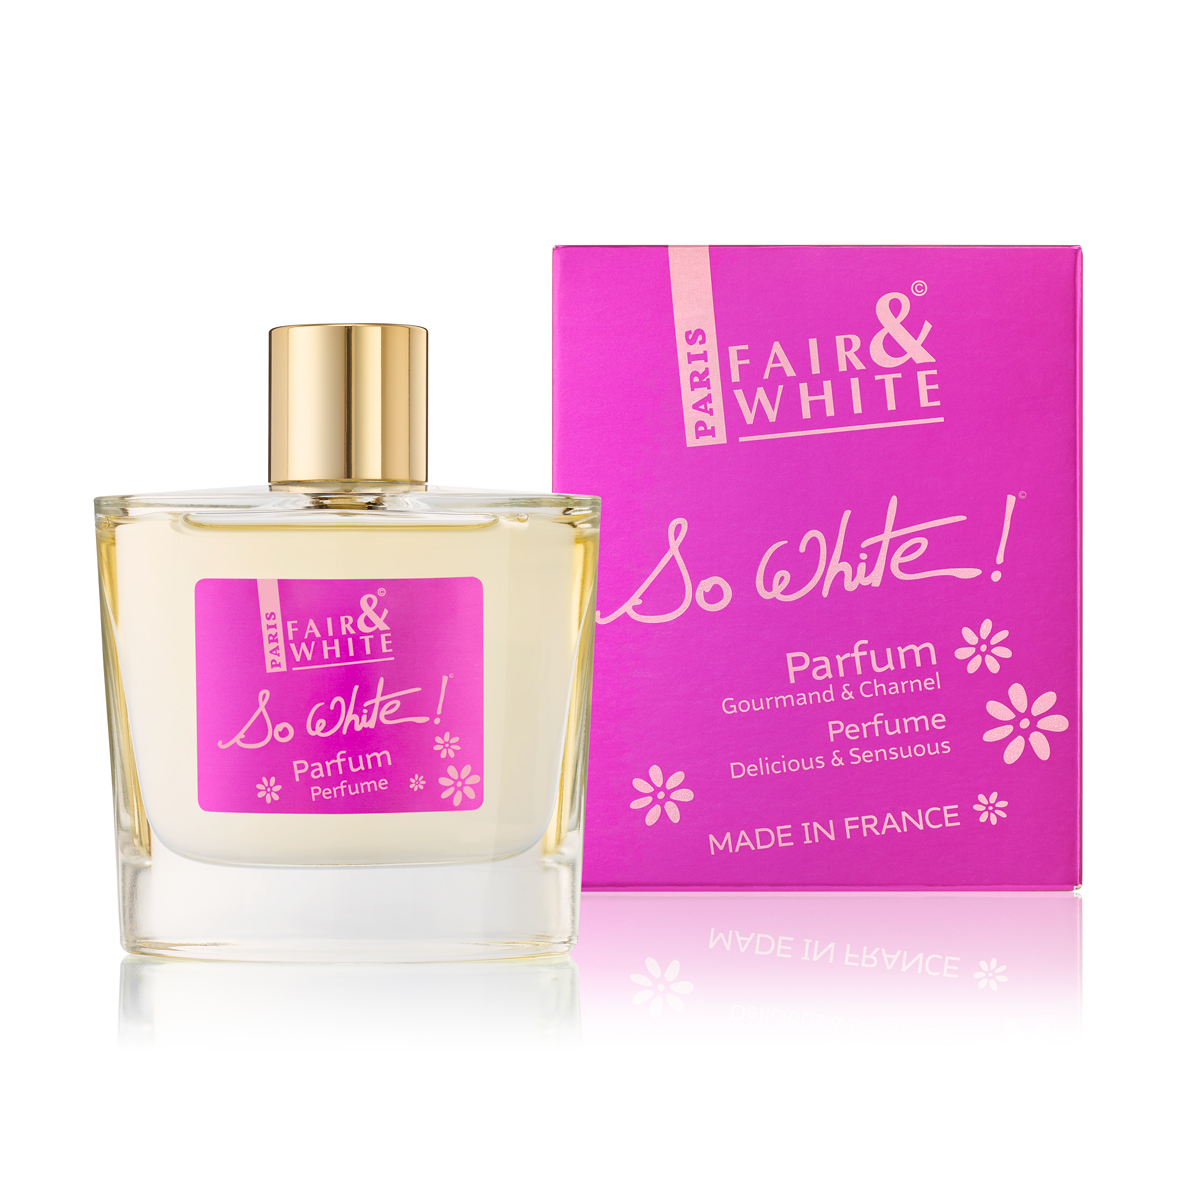 Parfum |So White 